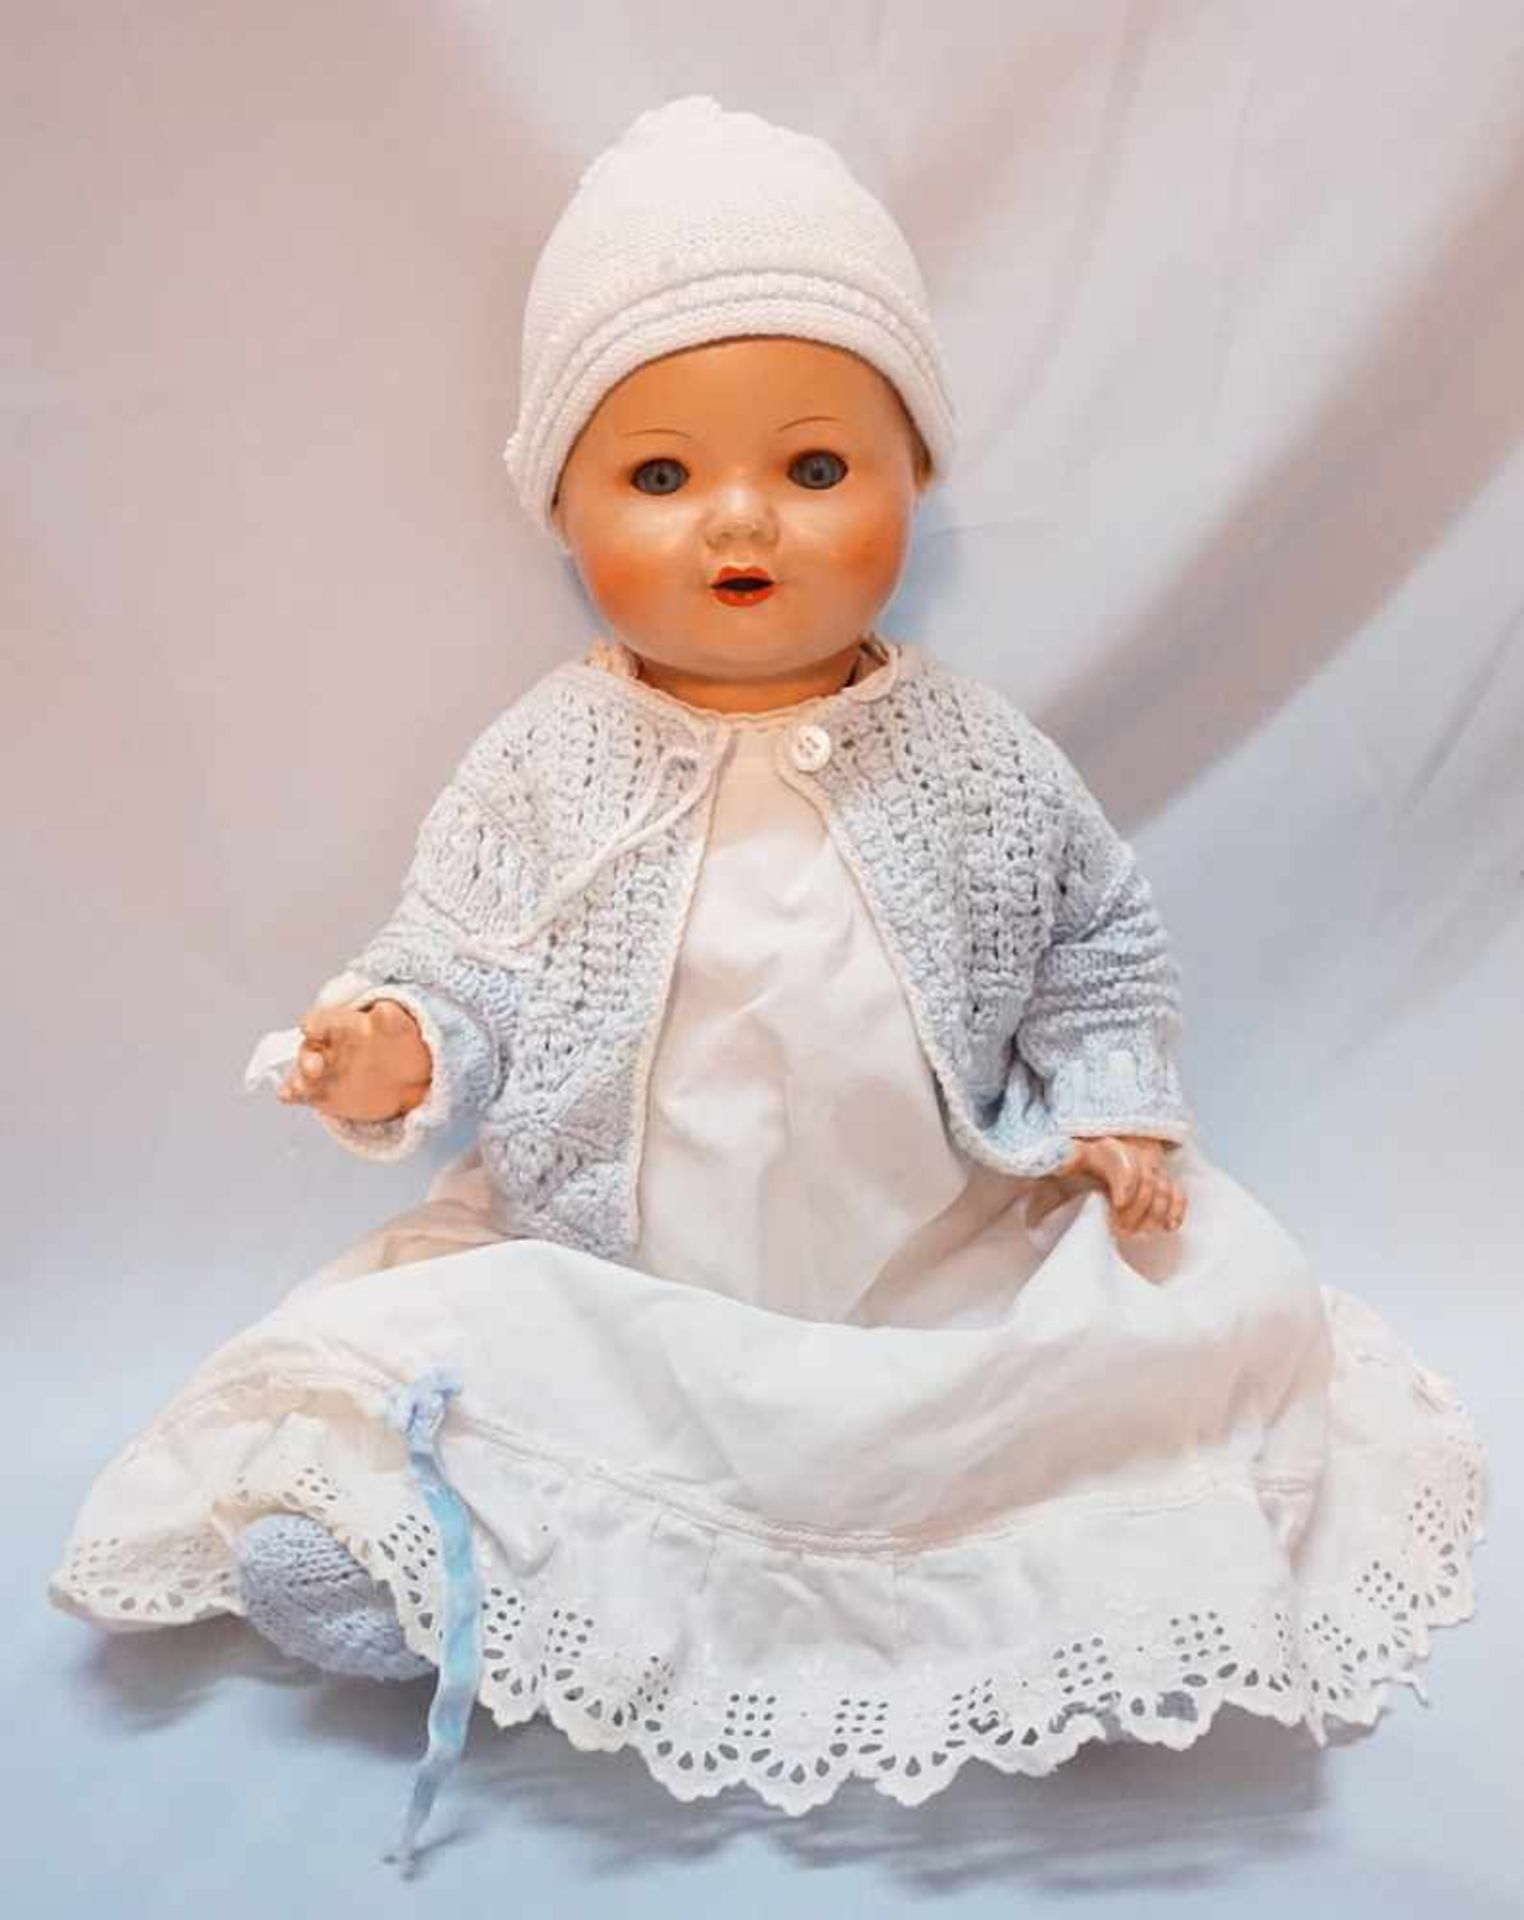 1 Babypuppe wohl ARMAND MARSEILLE, gemarkt "A. M. 2542/23/4. 3 1/2. K"Massekörper, blaue Augen,